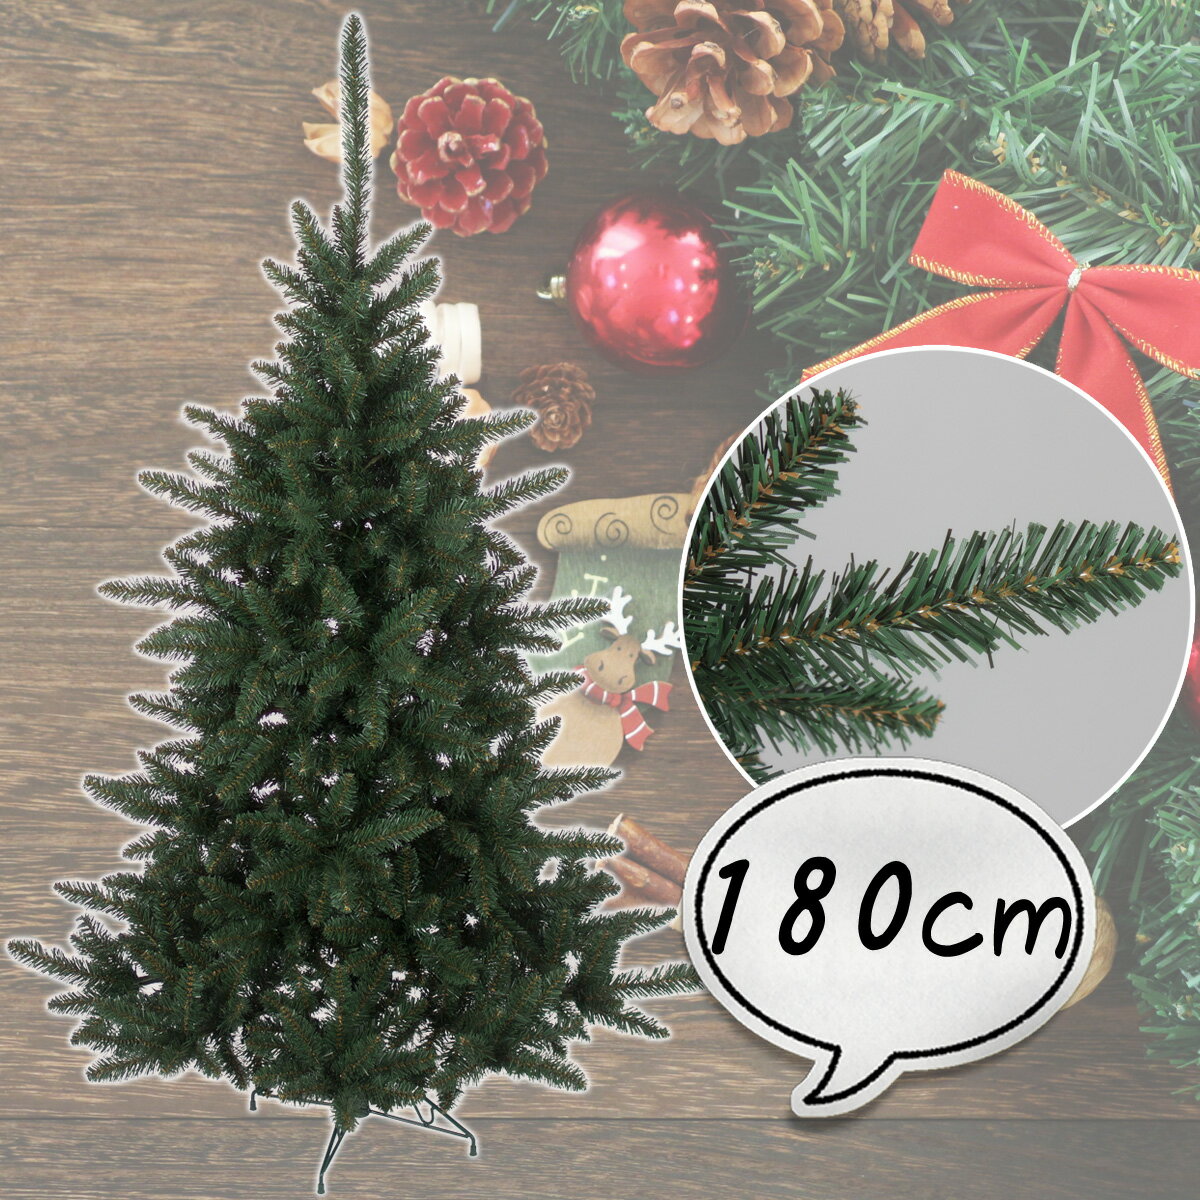 クリスマスツリー 180cm [ツリー 木 単品 ] ロイヤルモントレーツリー 北欧 おしゃれ 【レビュー】 【T】